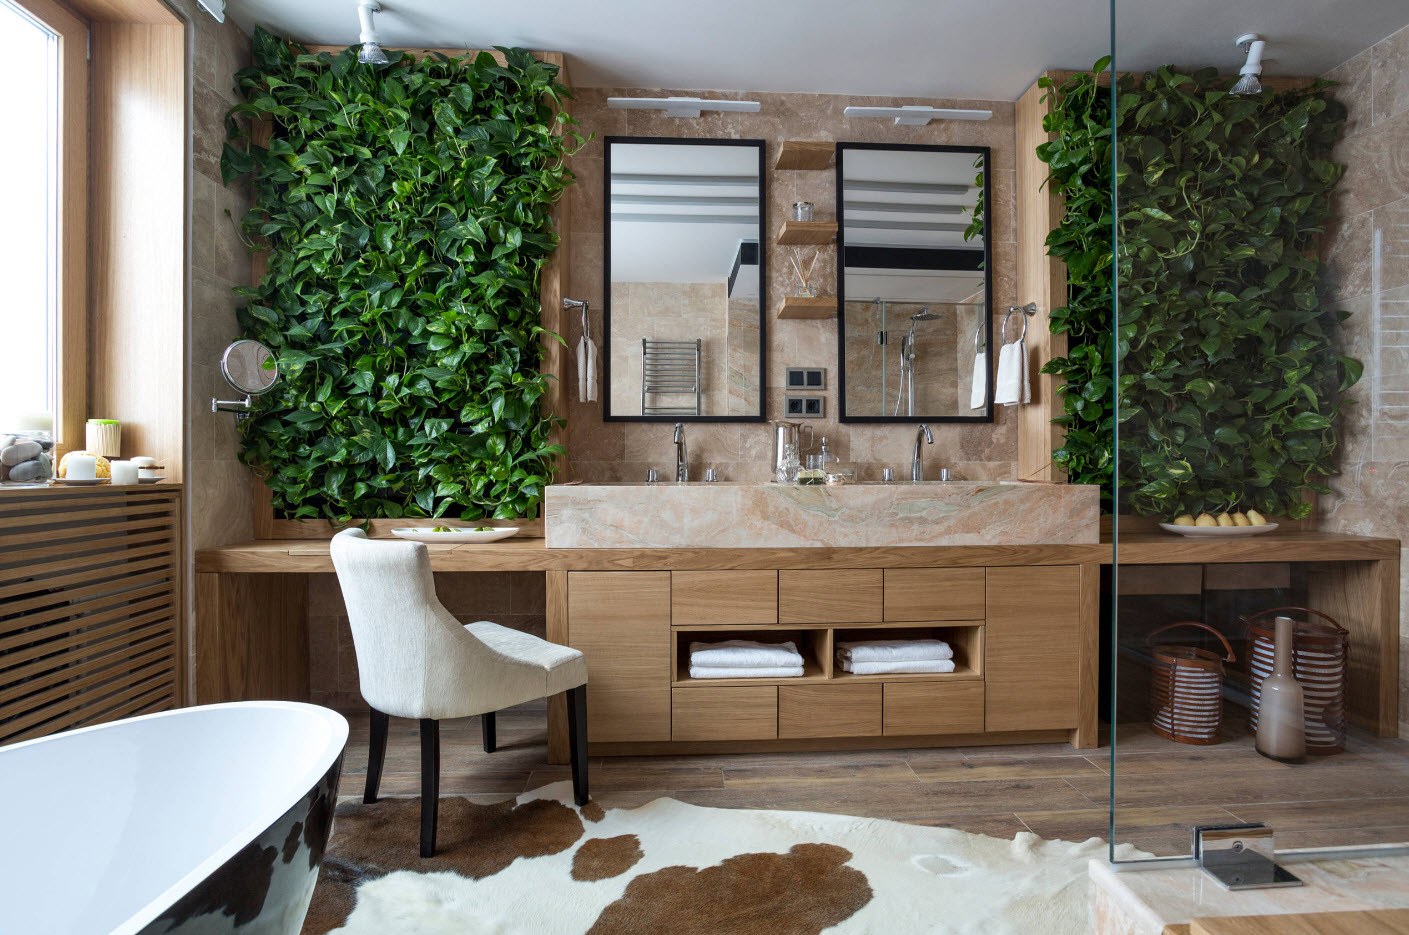 Absoiutely великолепный дизайн ЭКО-ванной комнаты с зелеными зонами на стене и коровьей шкурой на полу